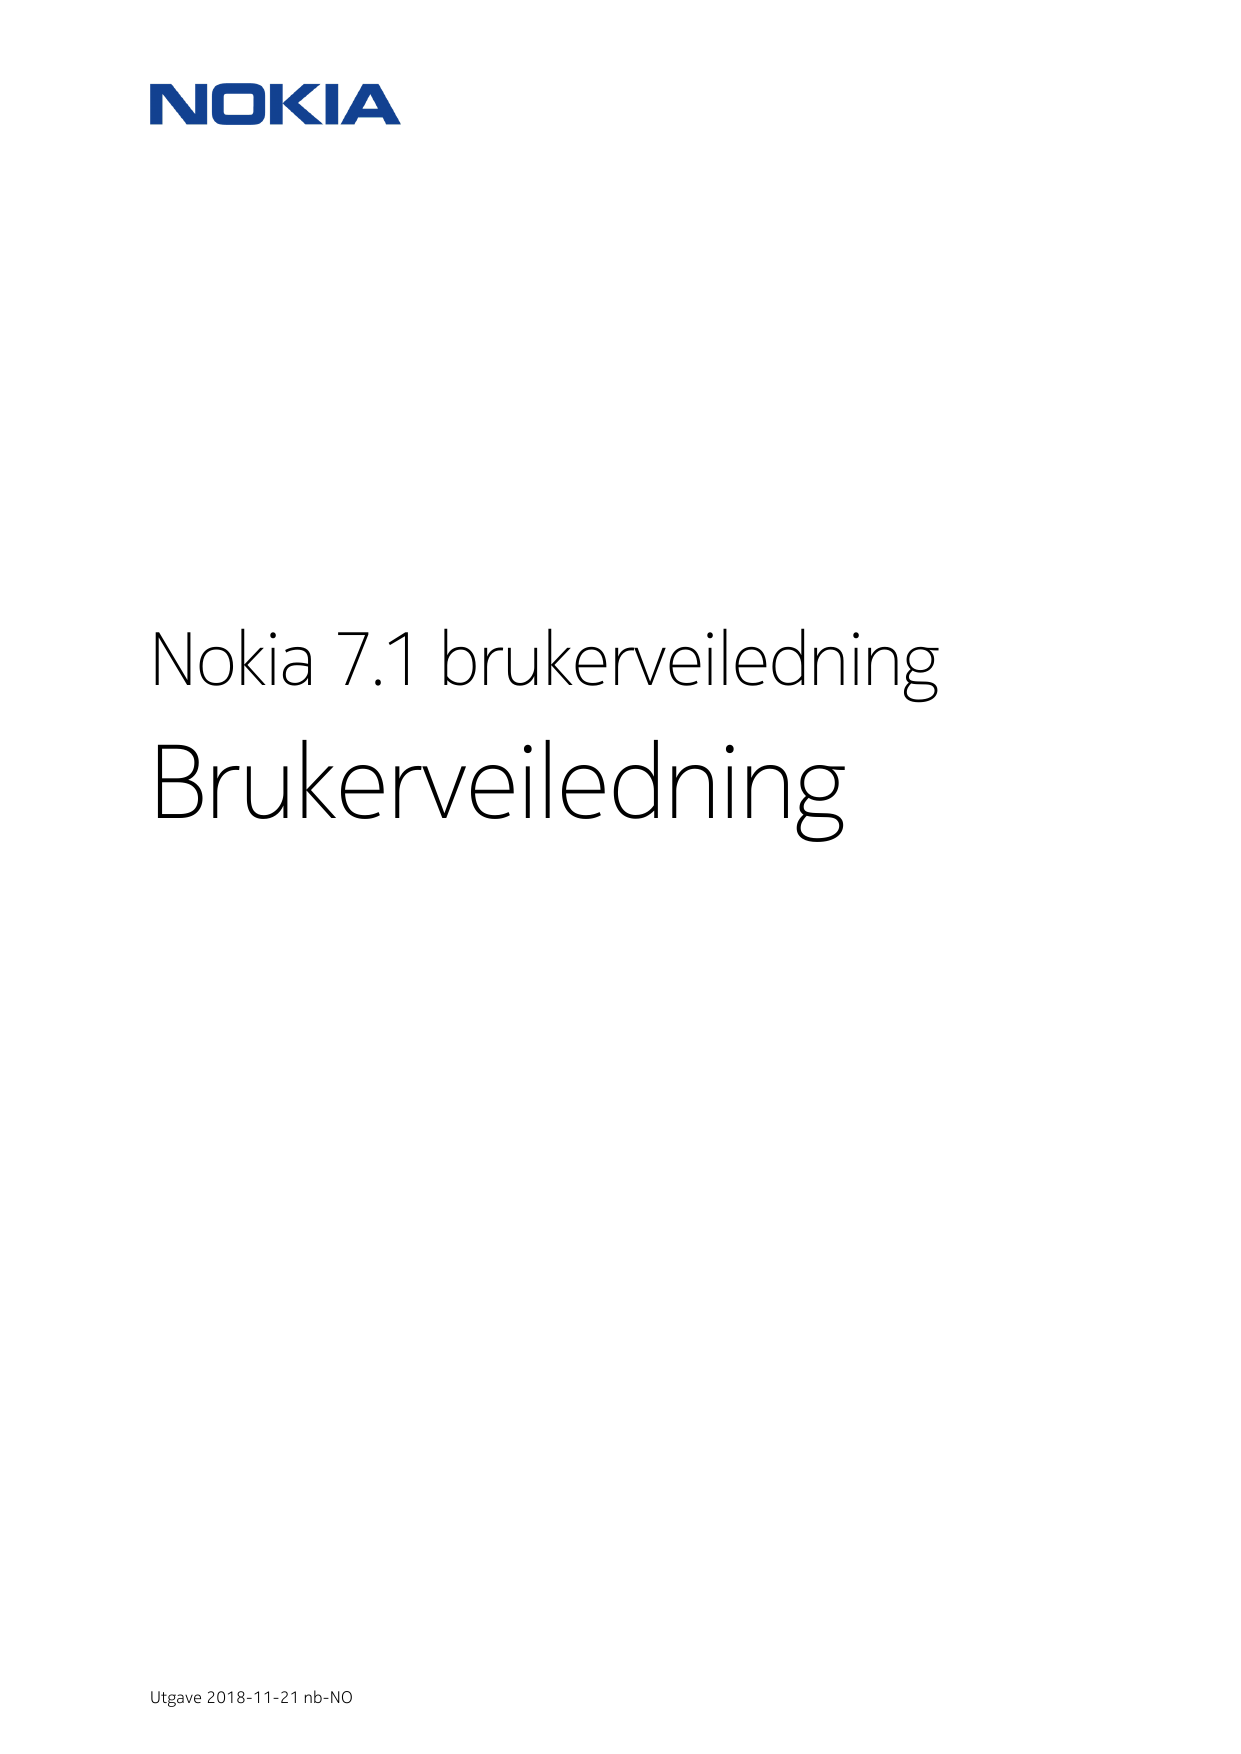 Nokia 7.1 brukerveiledningBrukerveiledningUtgave 2018-11-21 nb-NO